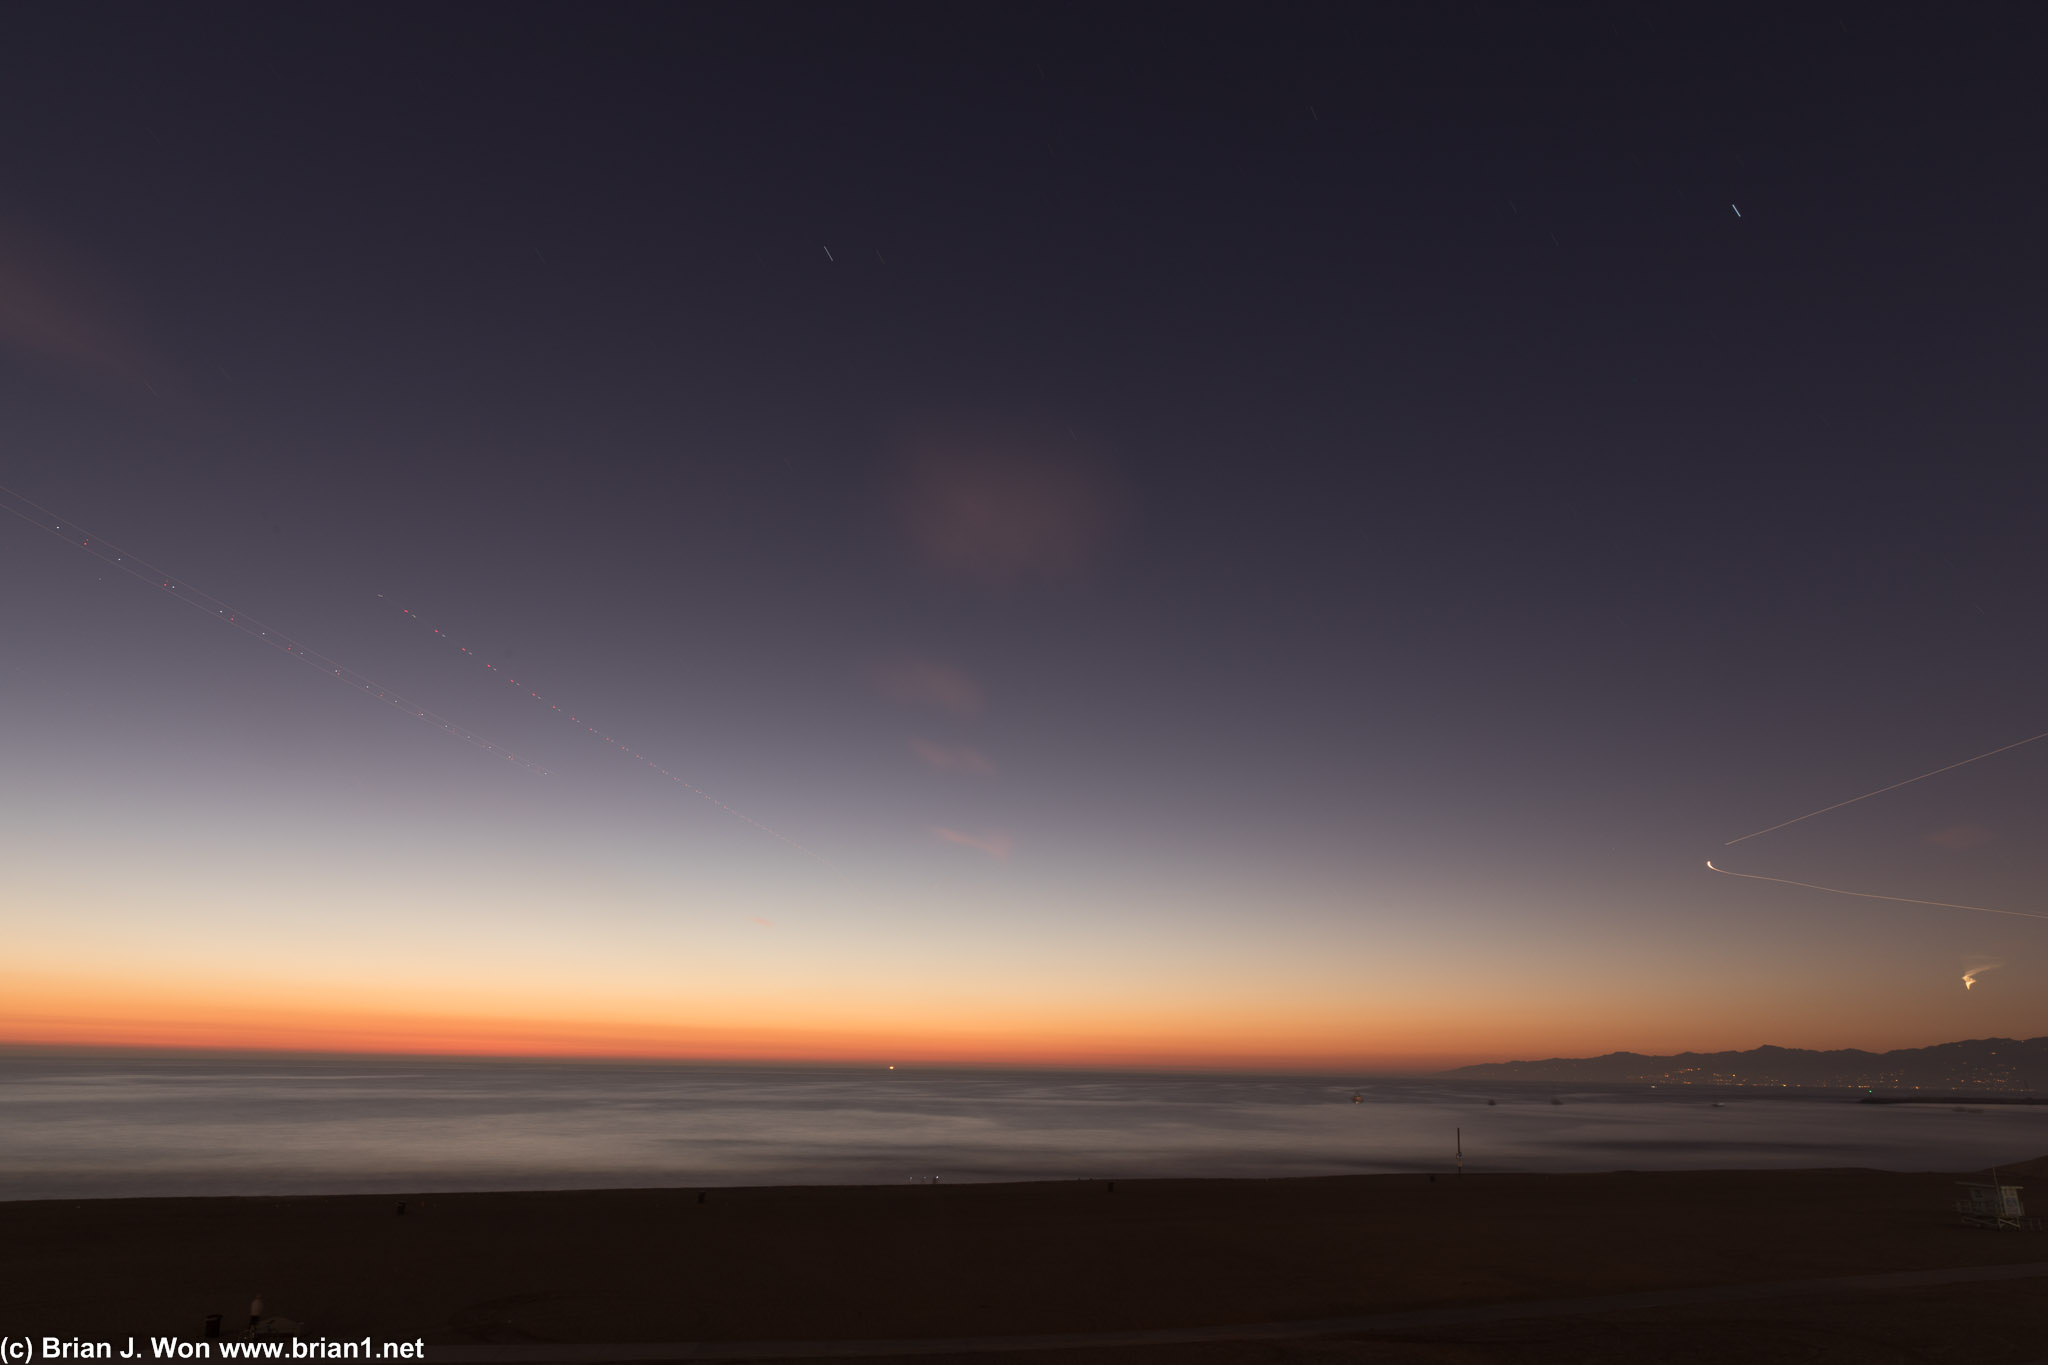 Sunset over Dockweiler Beach. 150 sec @ f/16, ISO 100.